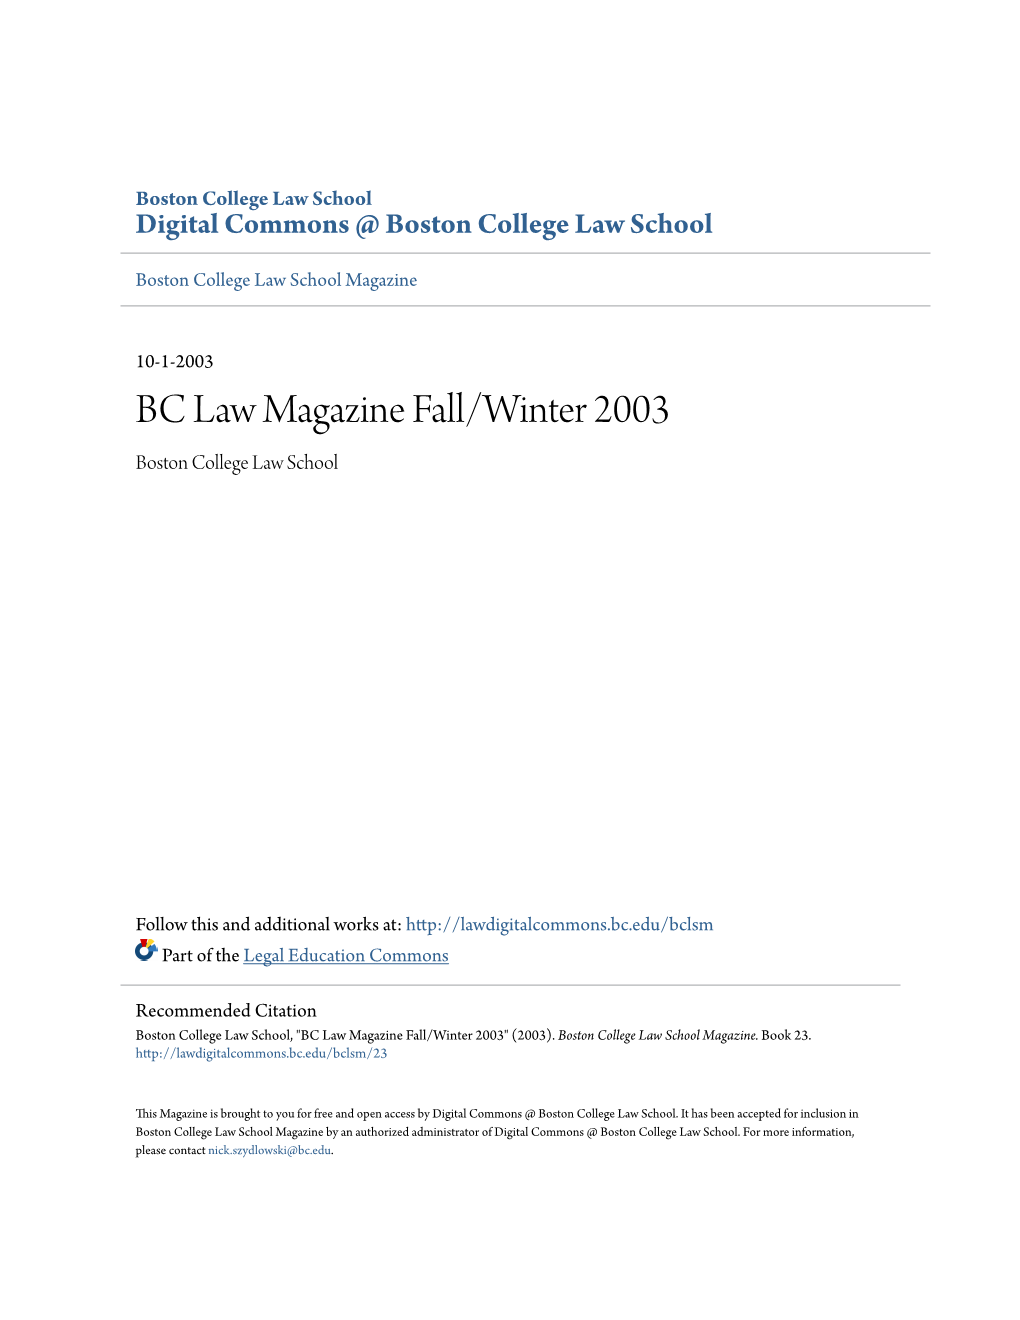 BC Law Magazine Fall/Winter 2003 Boston College Law School